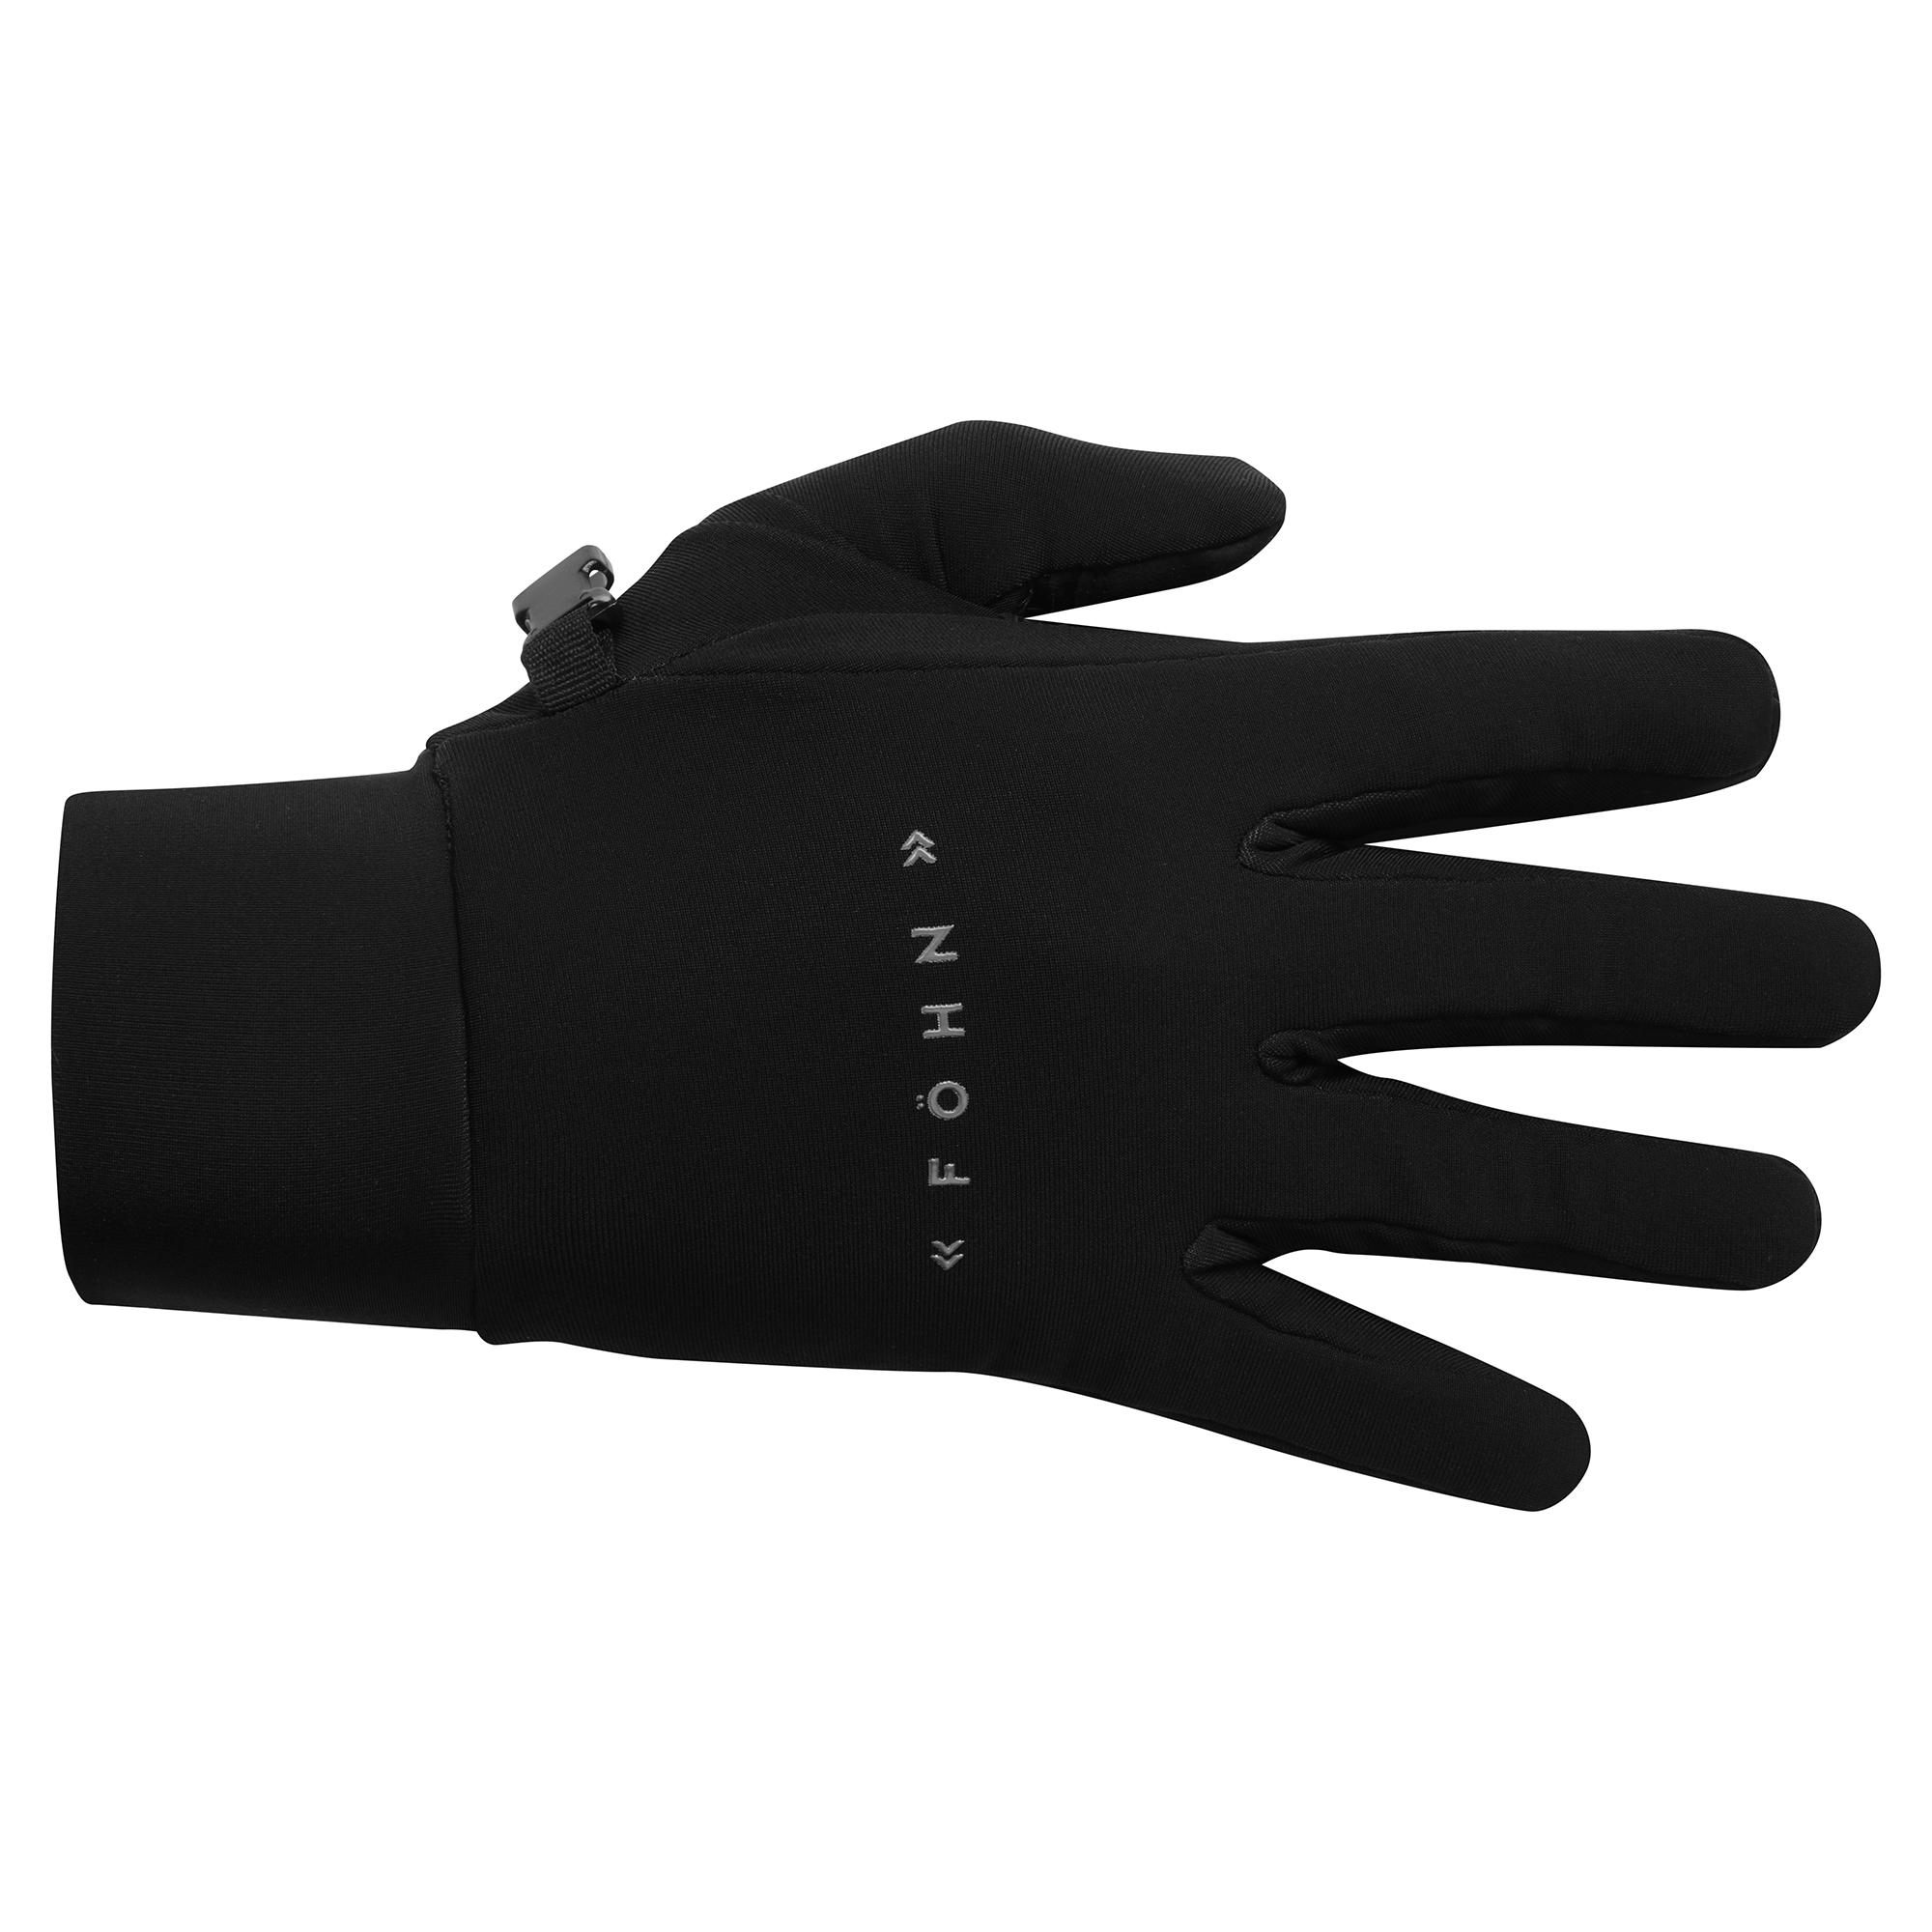 Fhn Waterproof Gloves - Black